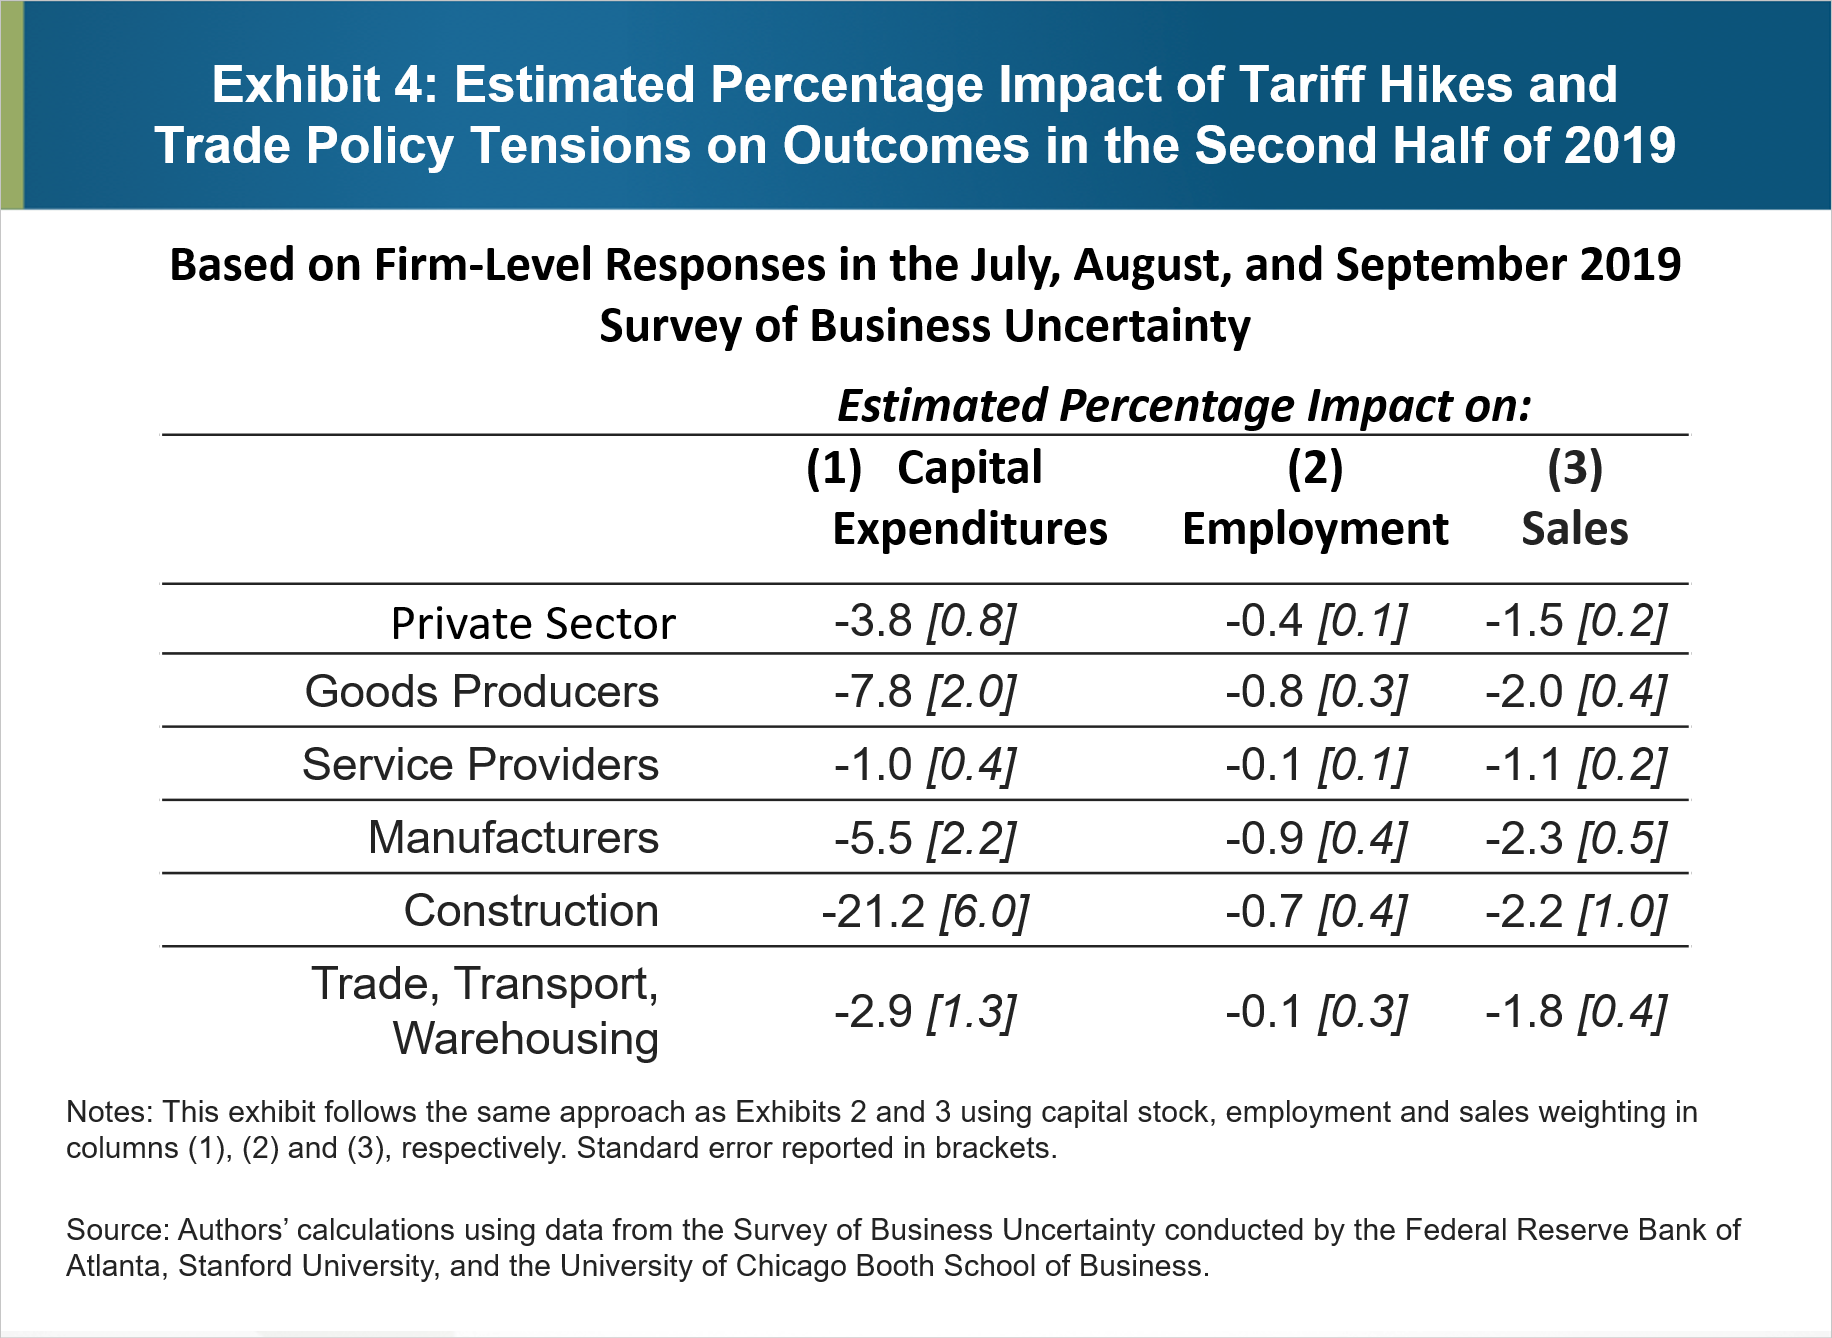 4. pielikums. Paredzamā tarifu paaugstināšanas un tirdzniecības politikas spriedzes procentuālā ietekme uz rezultātiem 2019. gada otrajā pusē